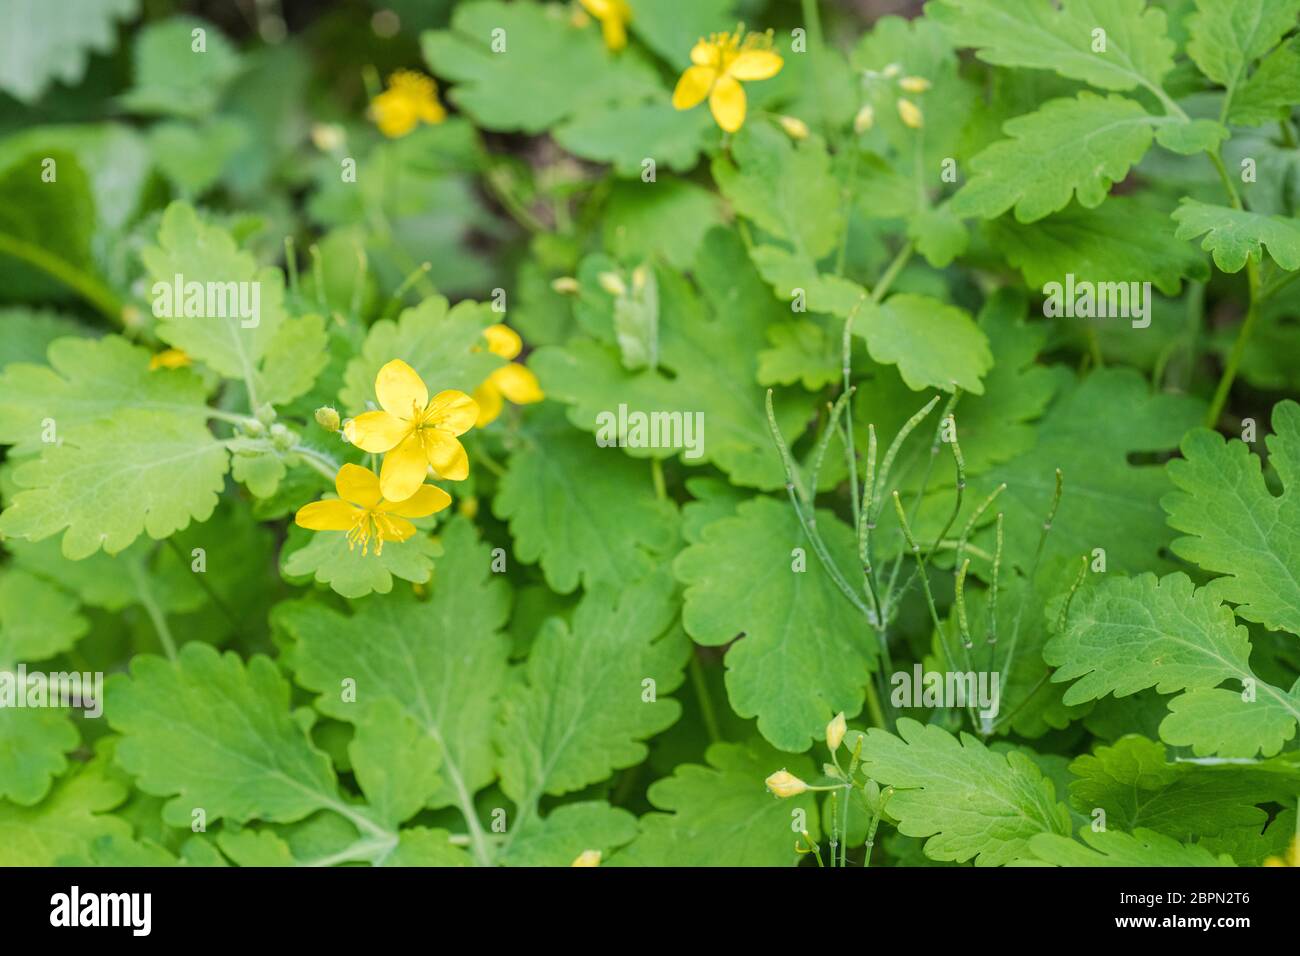 Gelbe Blüten von Greater Celandine / Chelidonium majus. Ein ungewöhnlicher 5-blättriger (4 ist normal) mit umgebenden Blättern. Ehemalige Heilpflanze. Stockfoto